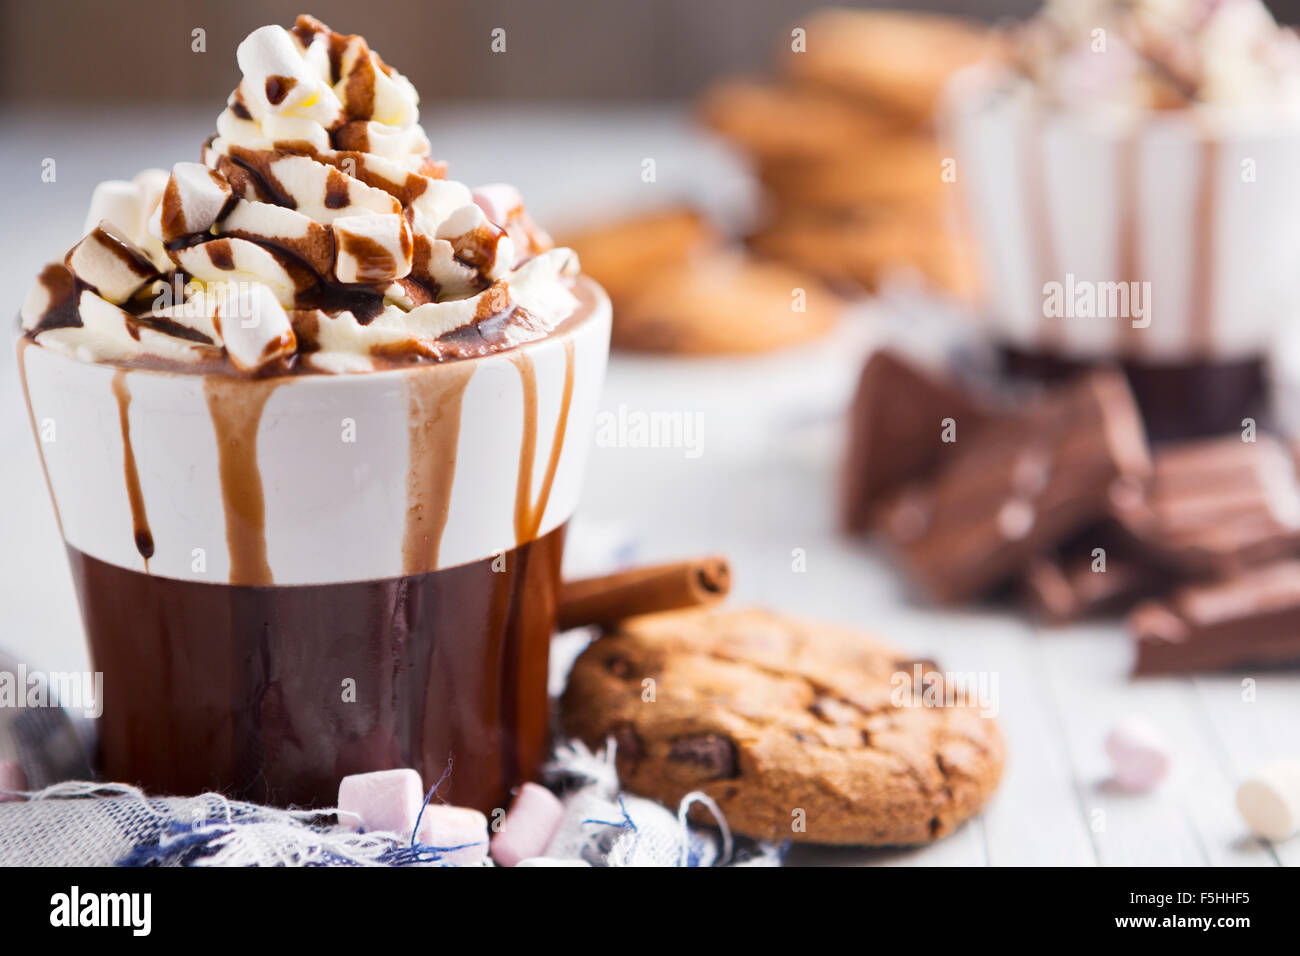 Eine unordentliche Tasse mit heißer Schokolade, Sahne, Marshmallows und Choclate Chip Cookies. Stockfoto